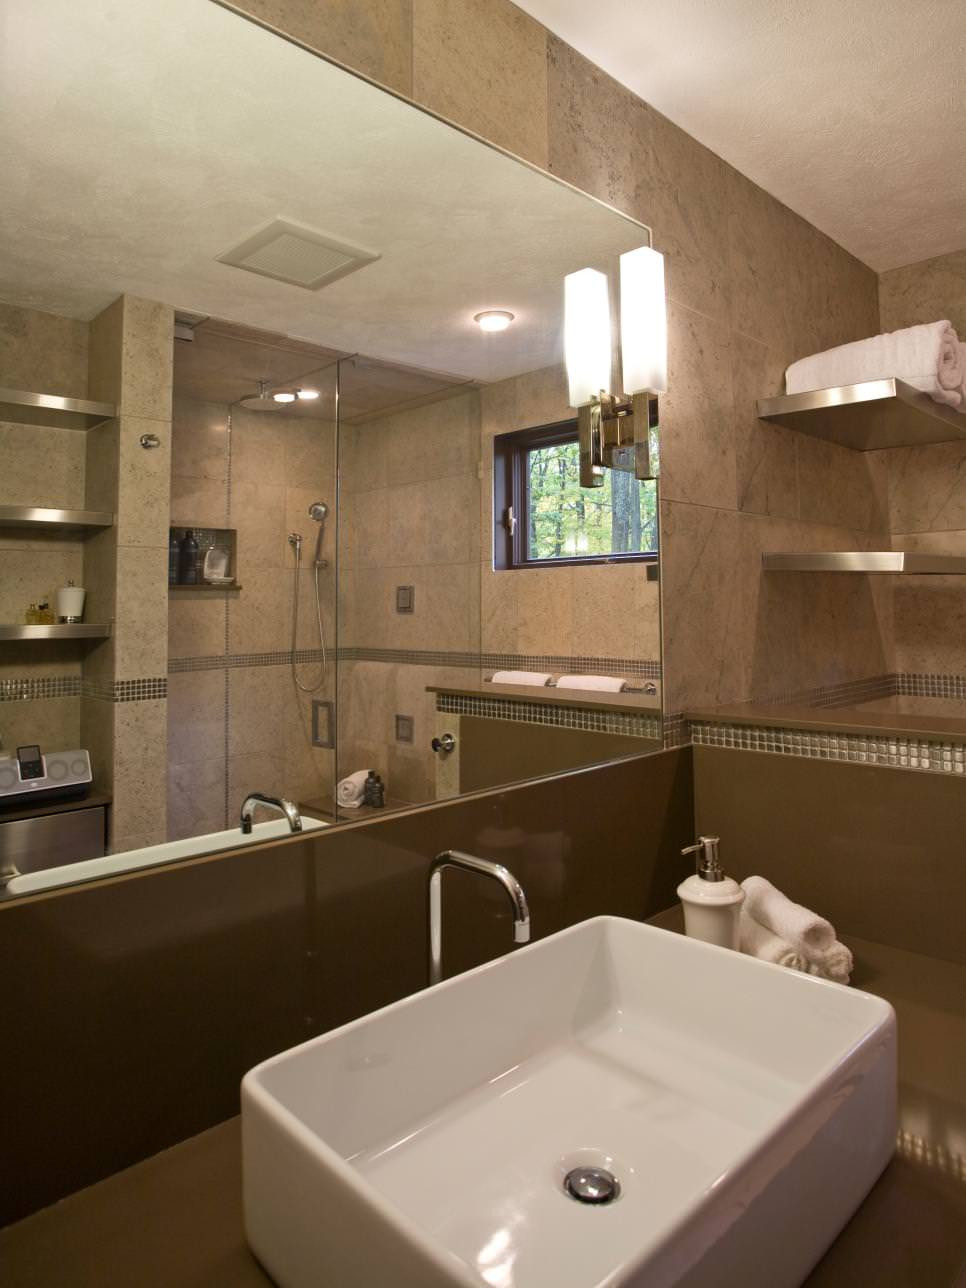 Spa Bathroom Decor
 25 Spa Bathroom Designs Bathroom Designs